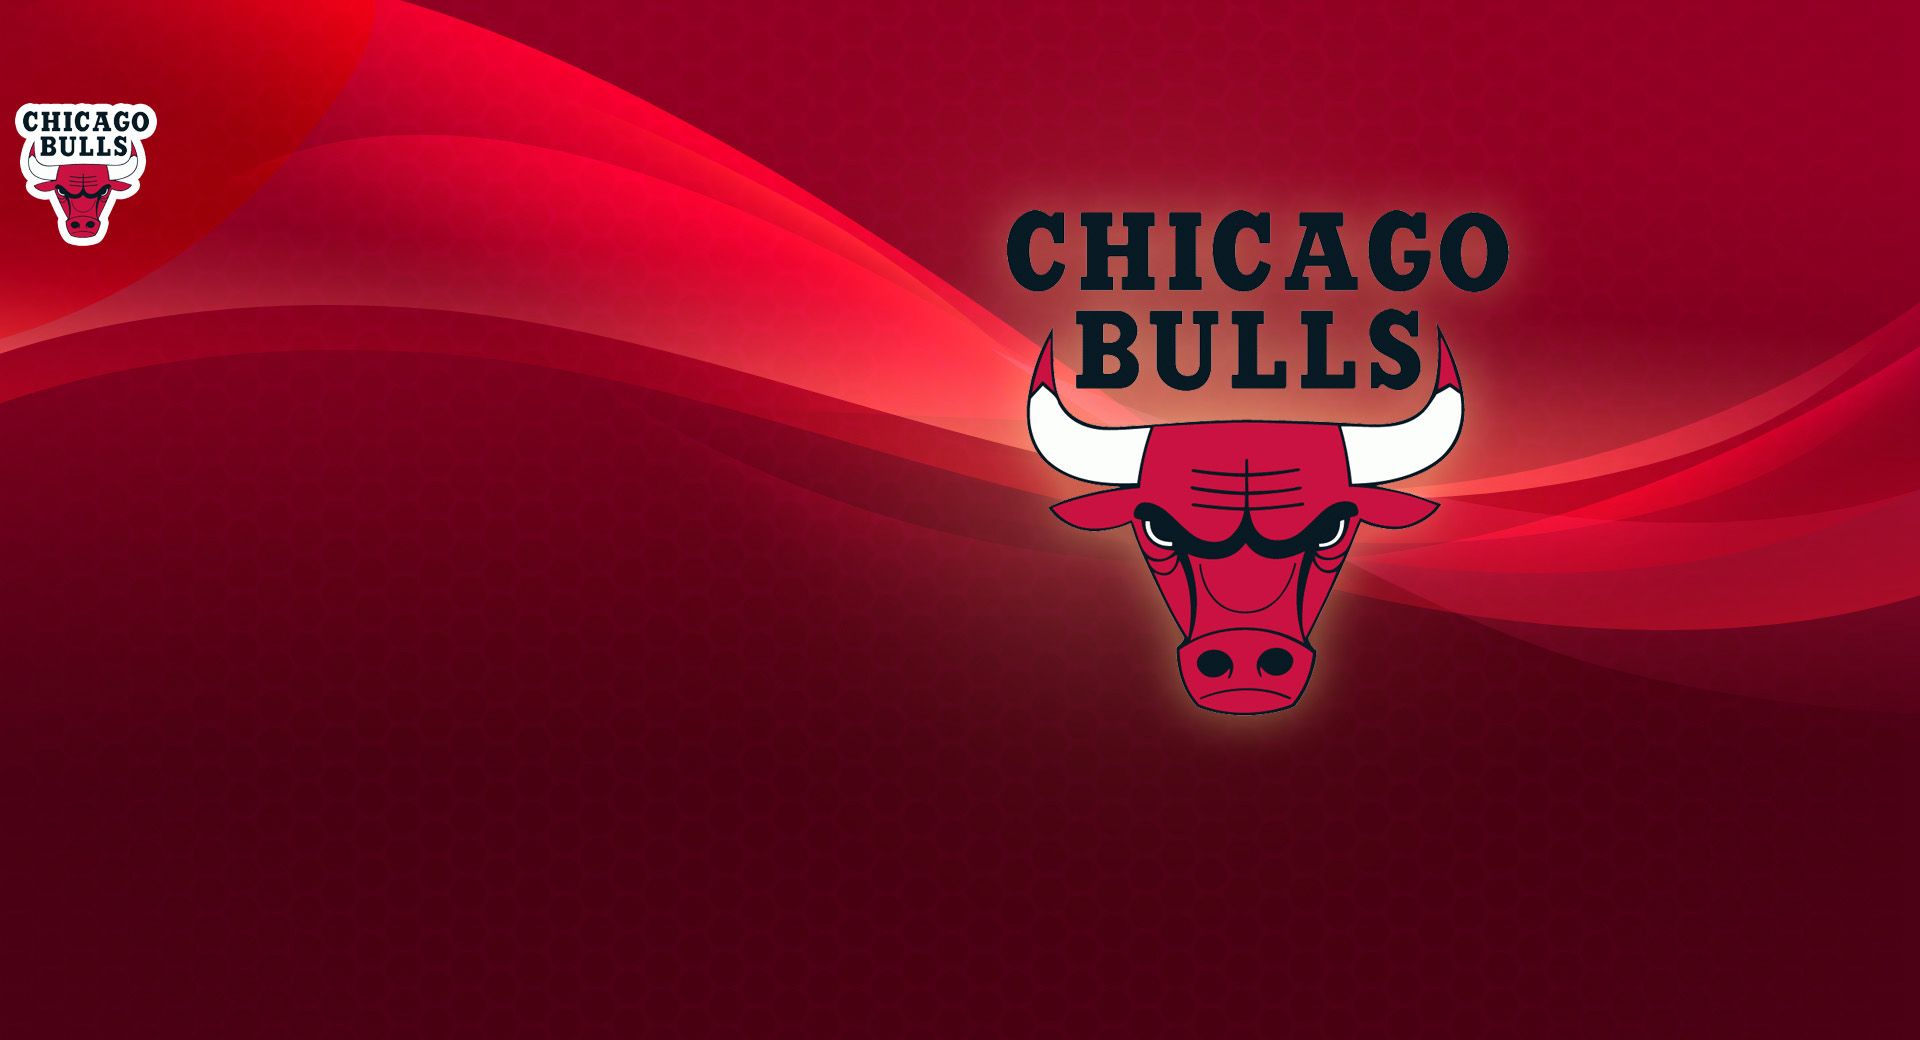 49+] Chicago Bulls Wallpaper 2015 - WallpaperSafari